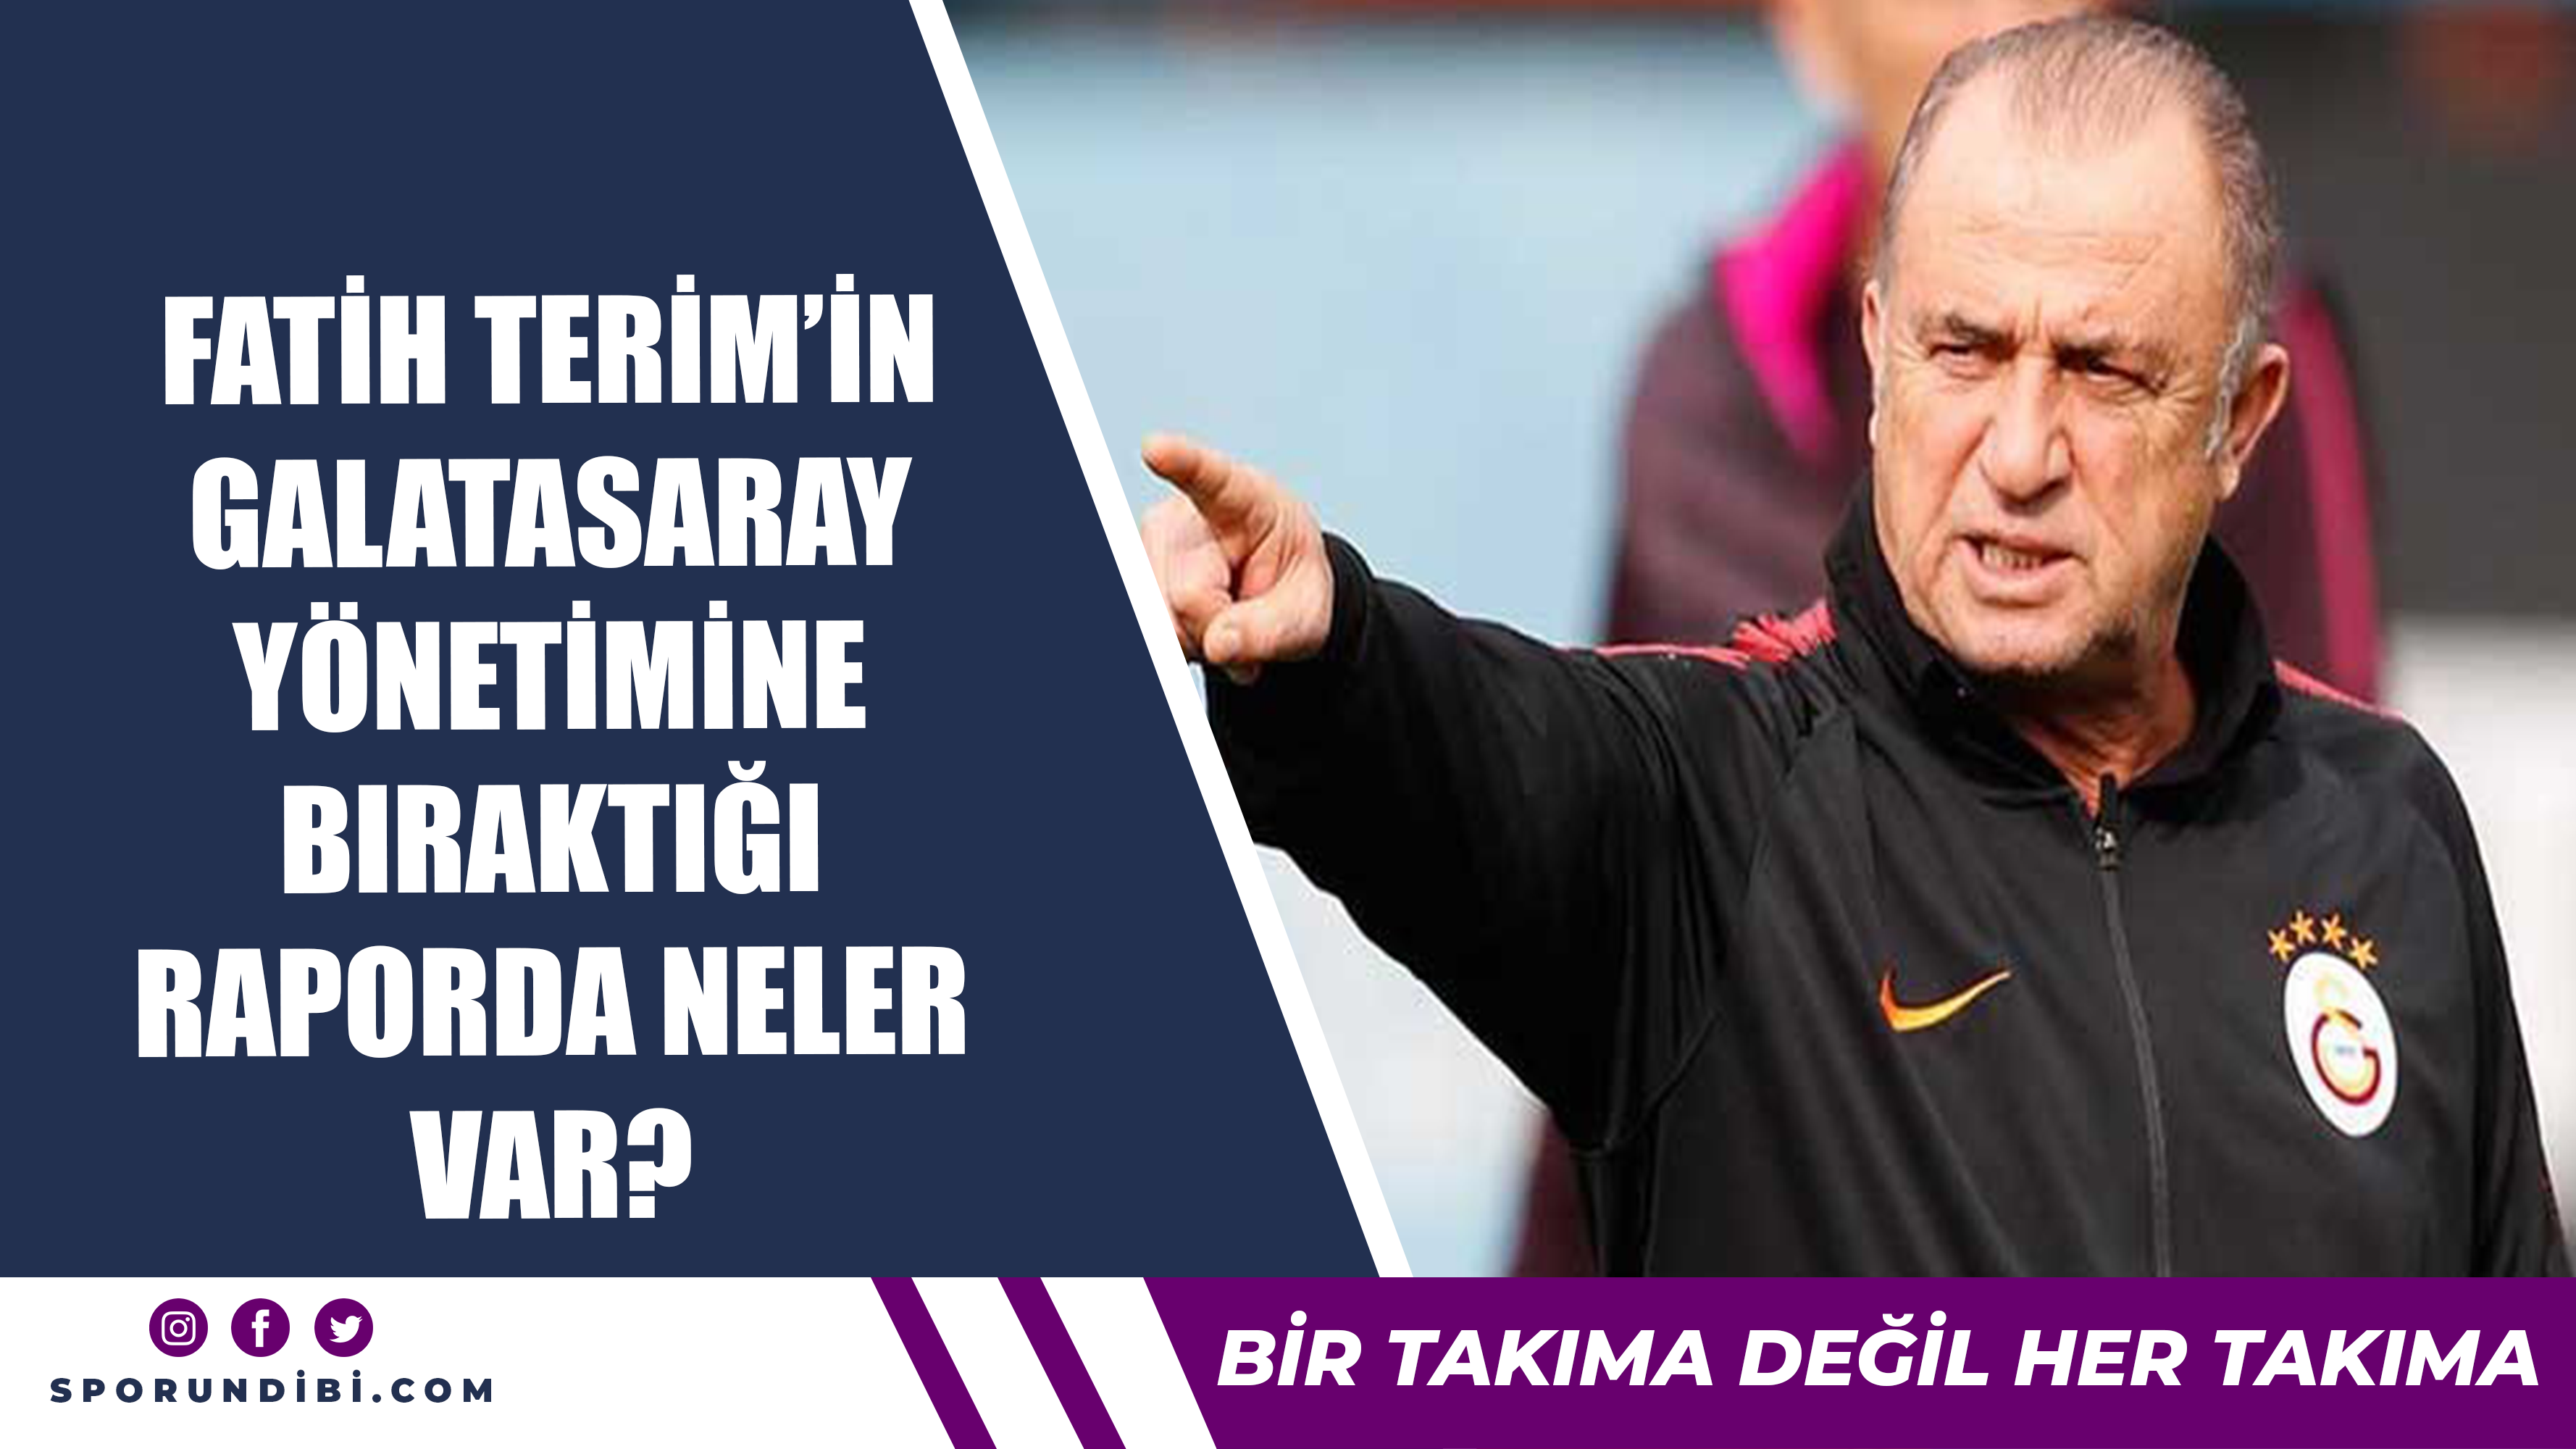 Fatih Terim'in Galatasaray yönetimine bıraktığı raporda neler var?